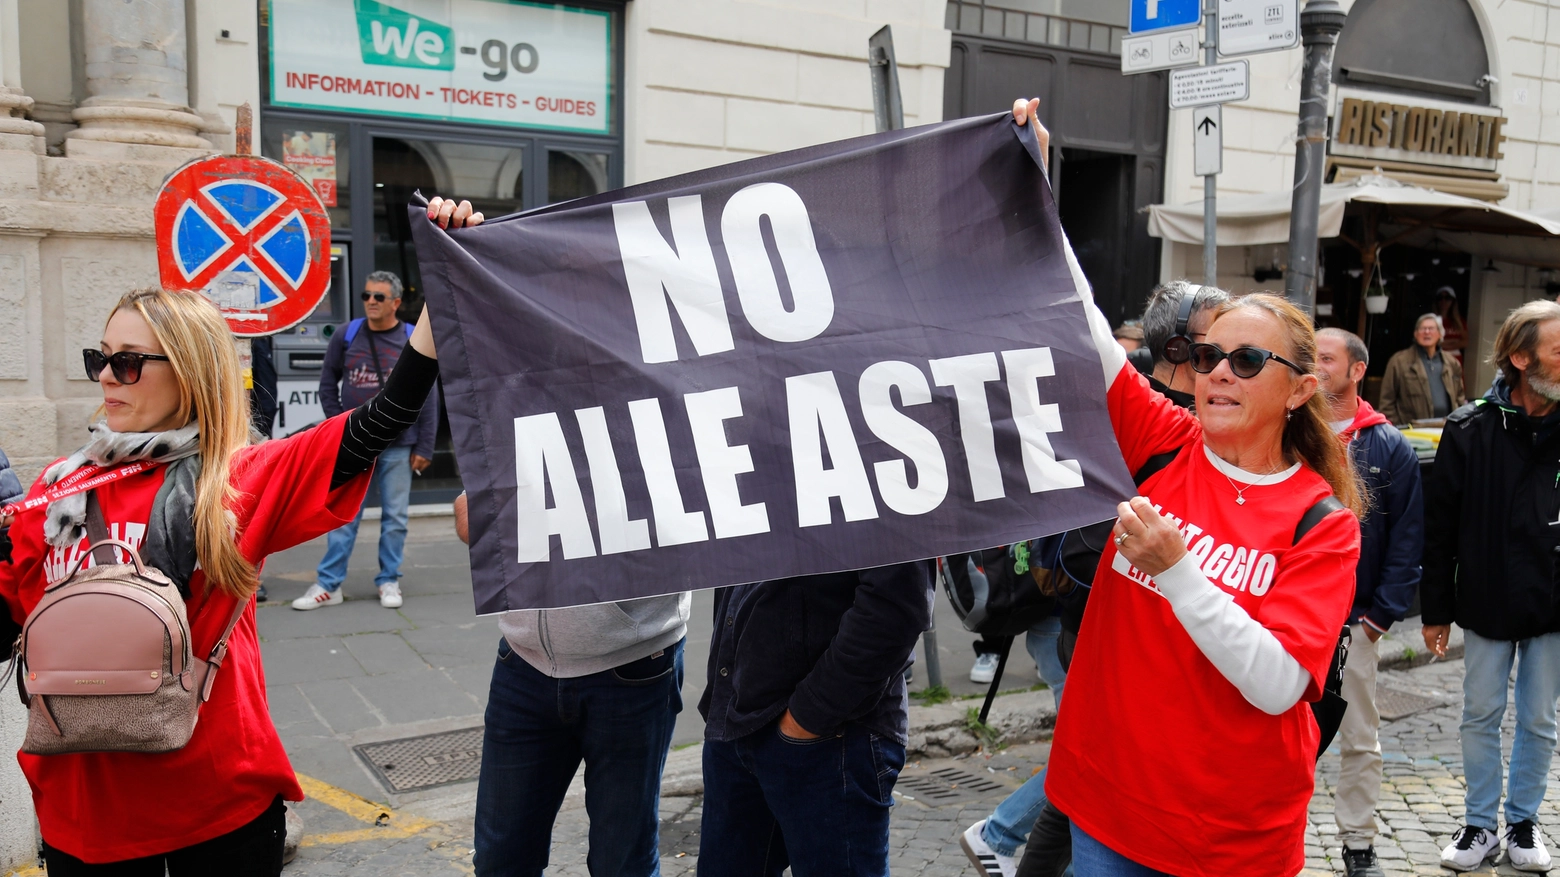 Migliaia di operatori in piazza a Roma contro il rischio di aste imminenti. Maurizio Gasparri: "Risorse non scarse, la categoria comunichi meglio"